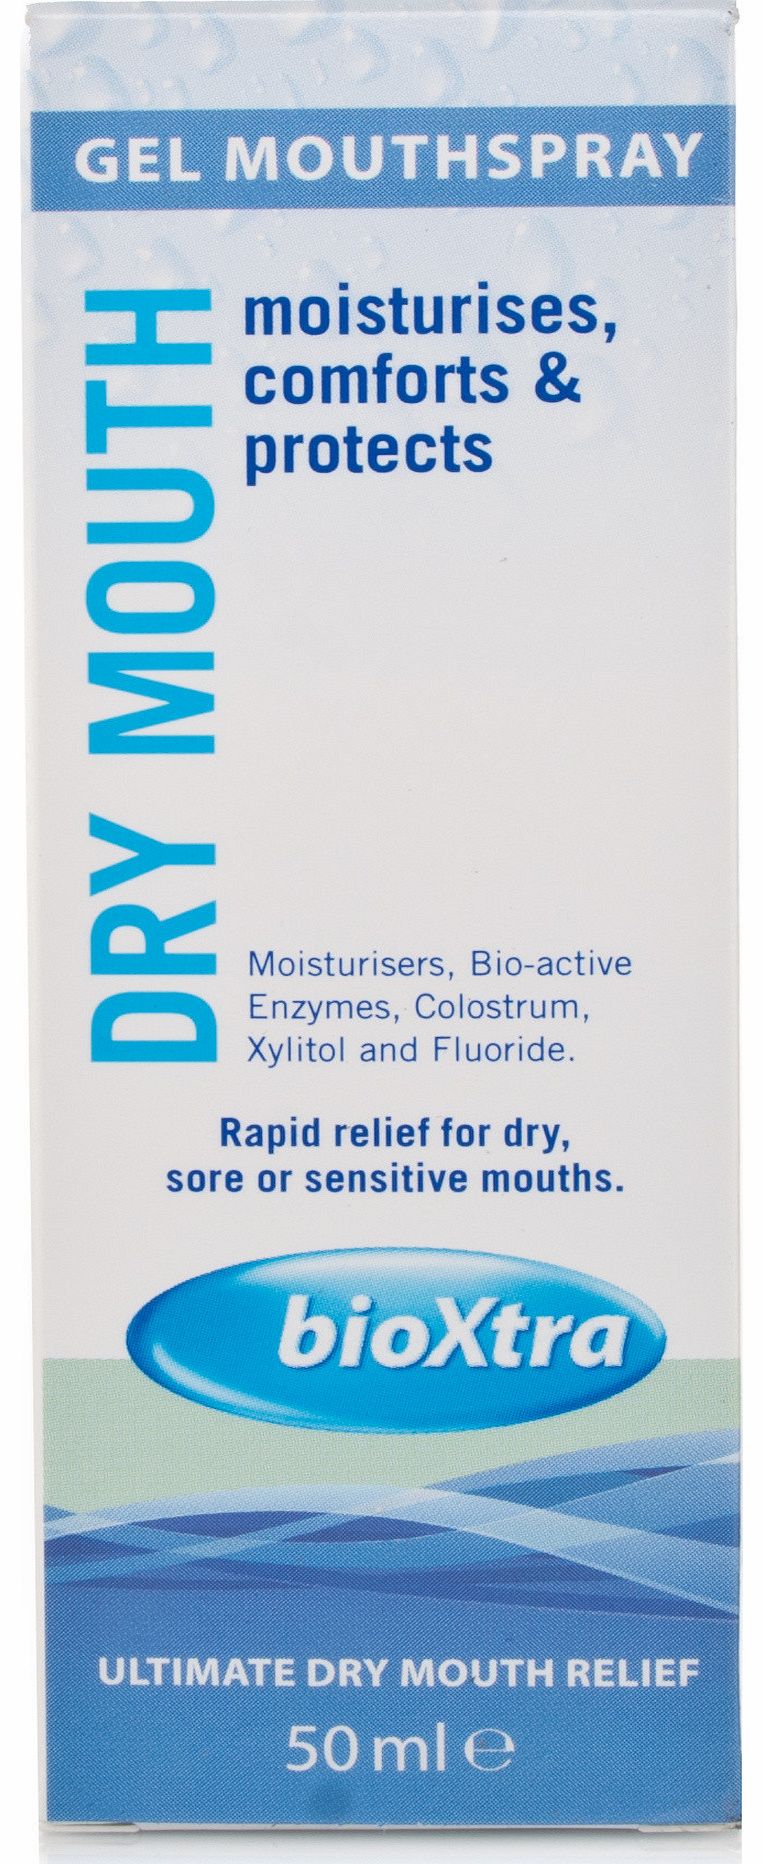 Bioxtra Dry Mouth Spray